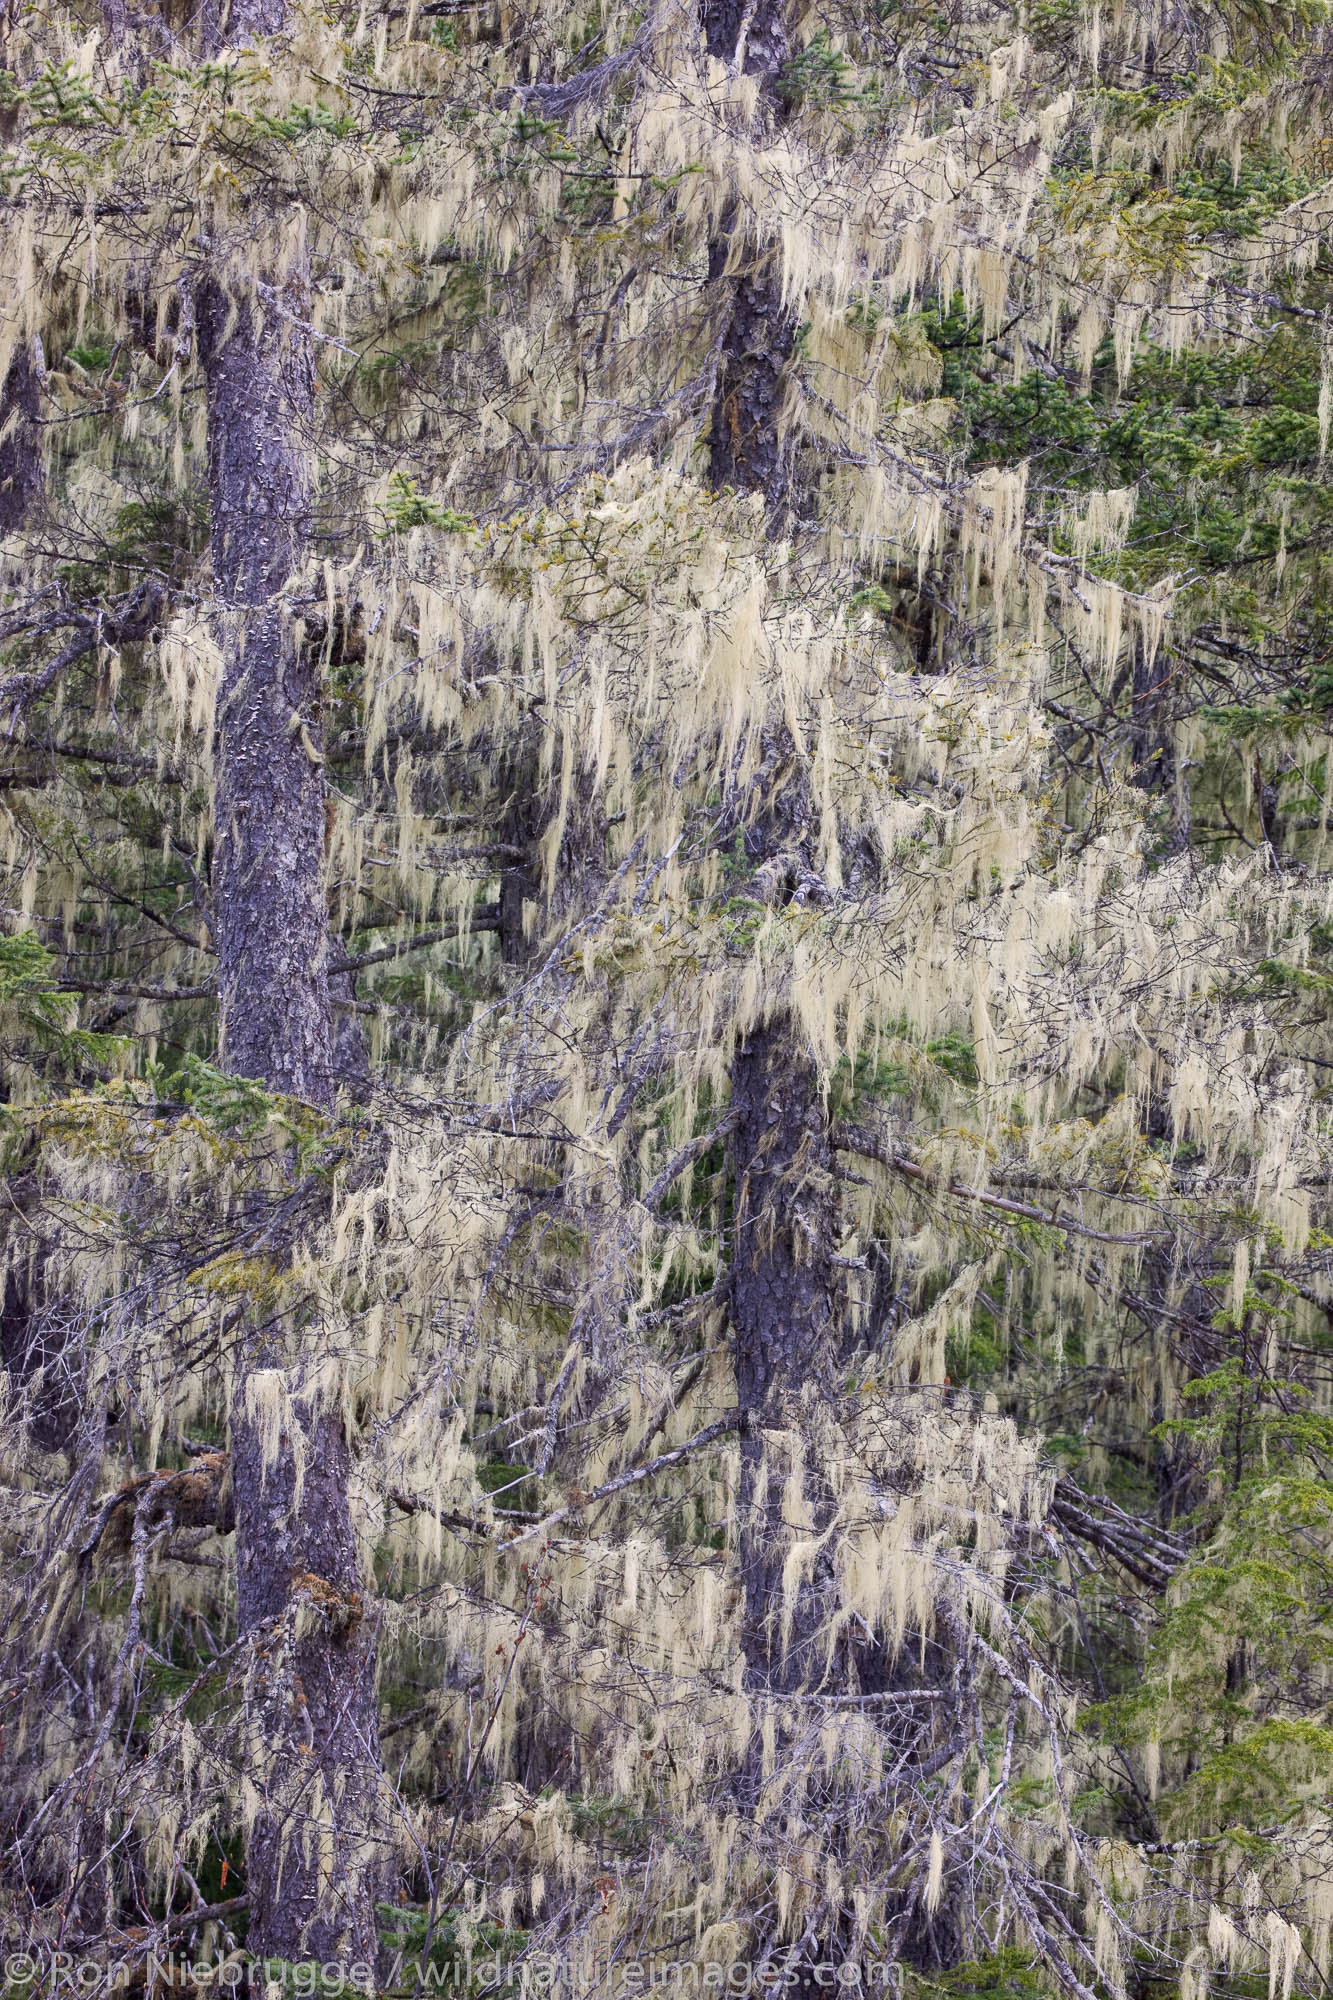 Forest along the Copper River Delta, near Cordova, Alaska.